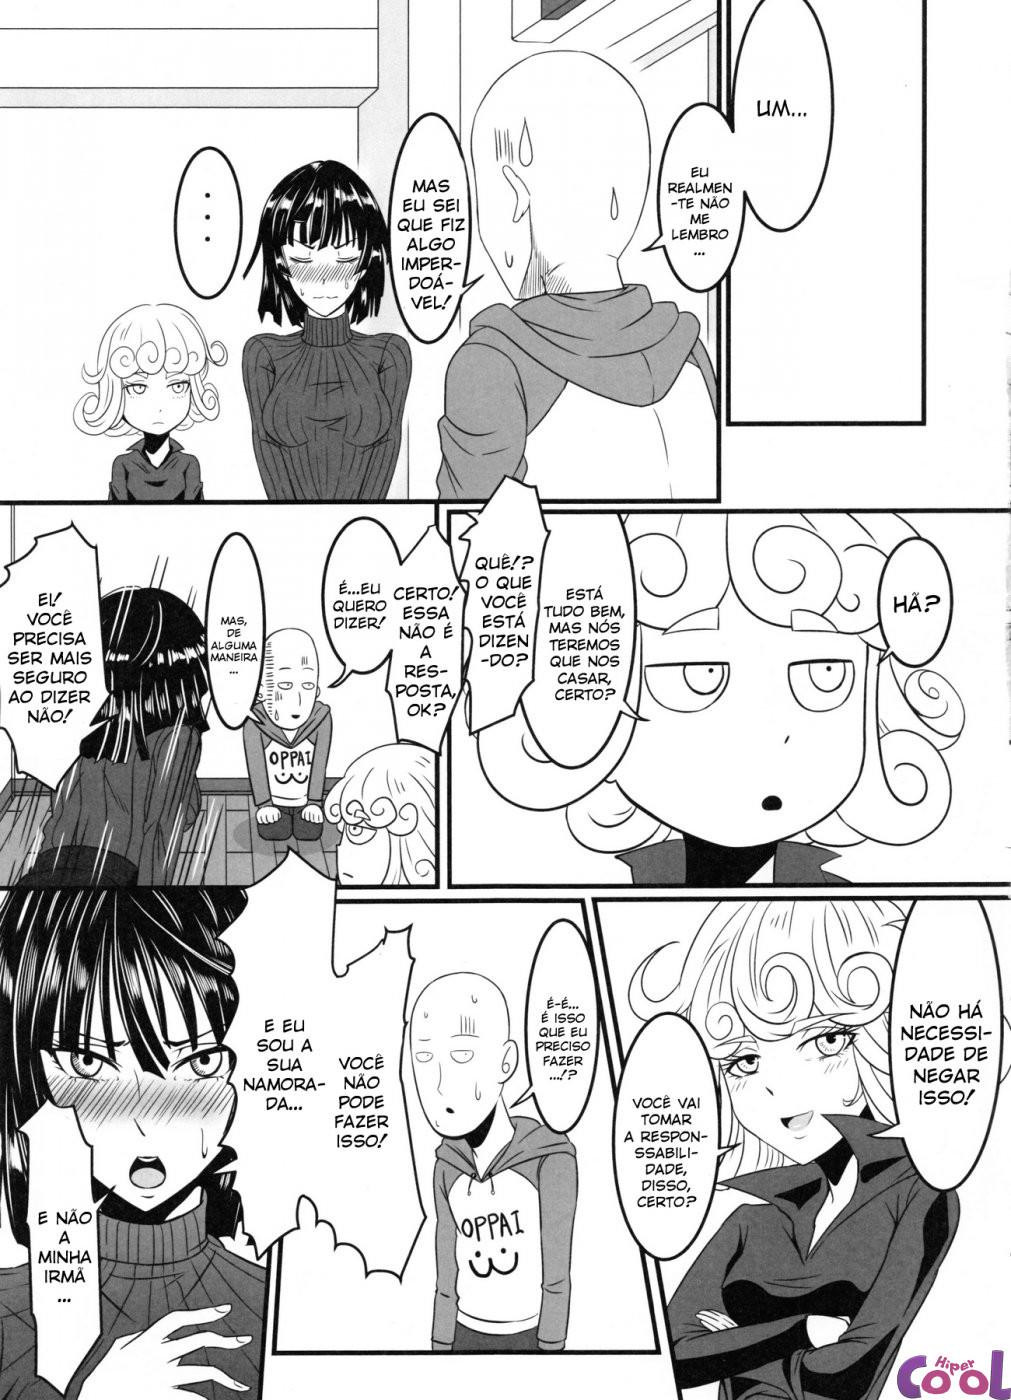 dekoboko-love-sister-2-gekime-chapter-01-page-20.jpg